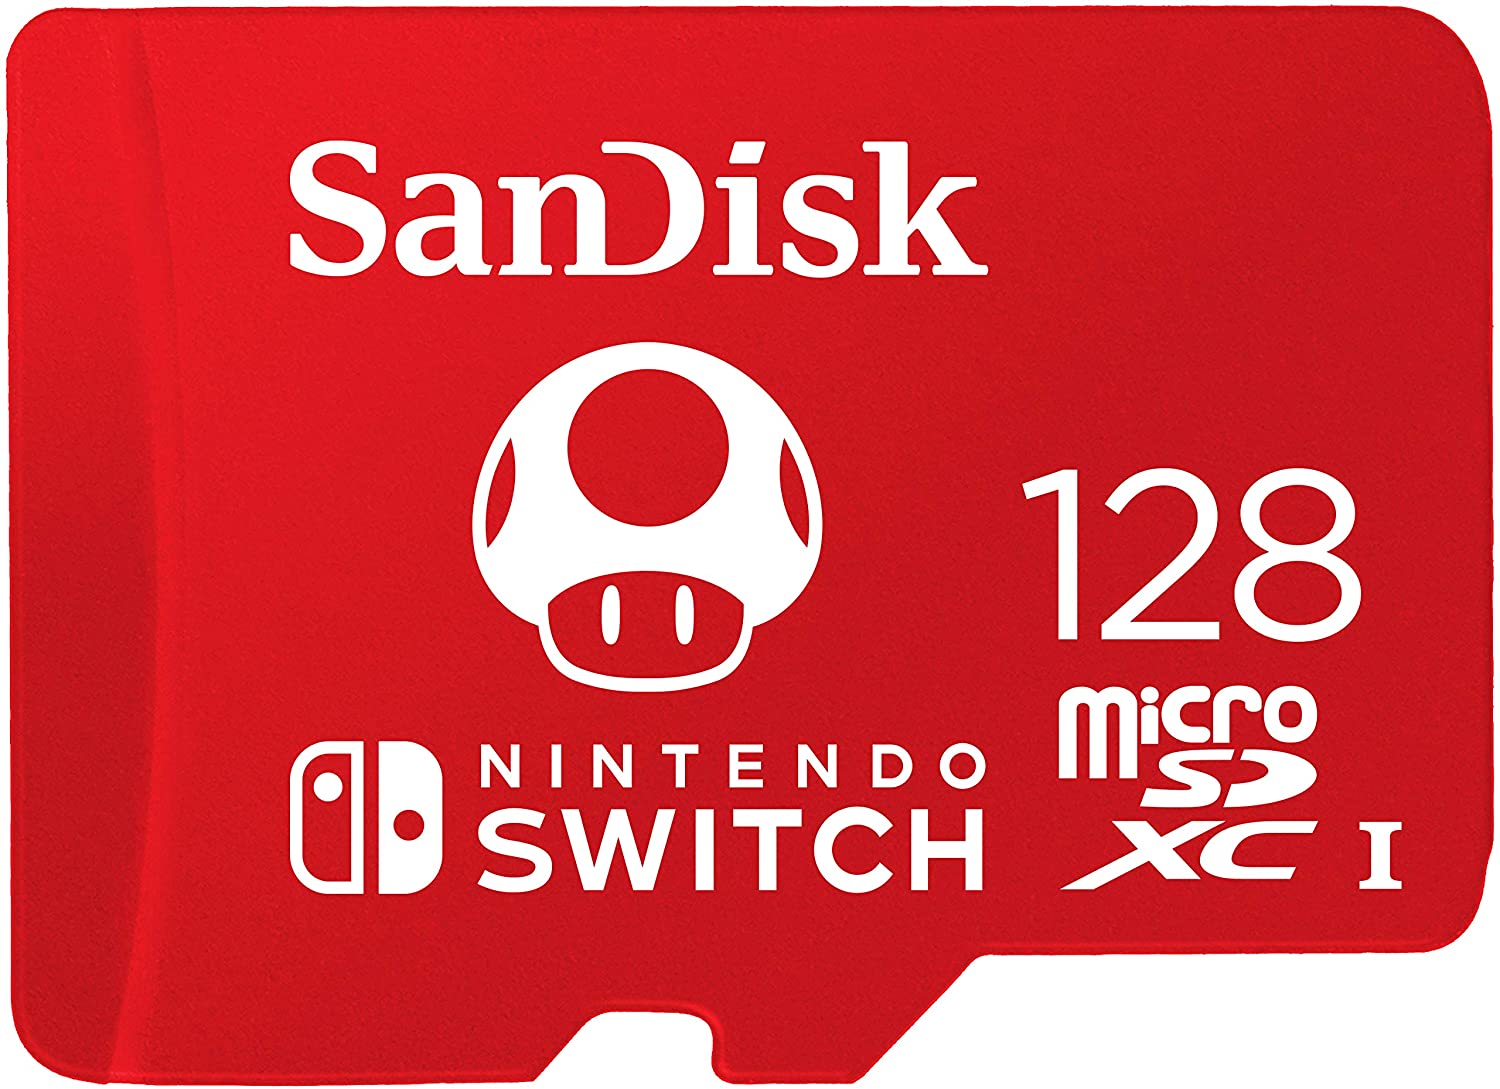 SanDisk microSD versione Super Mario